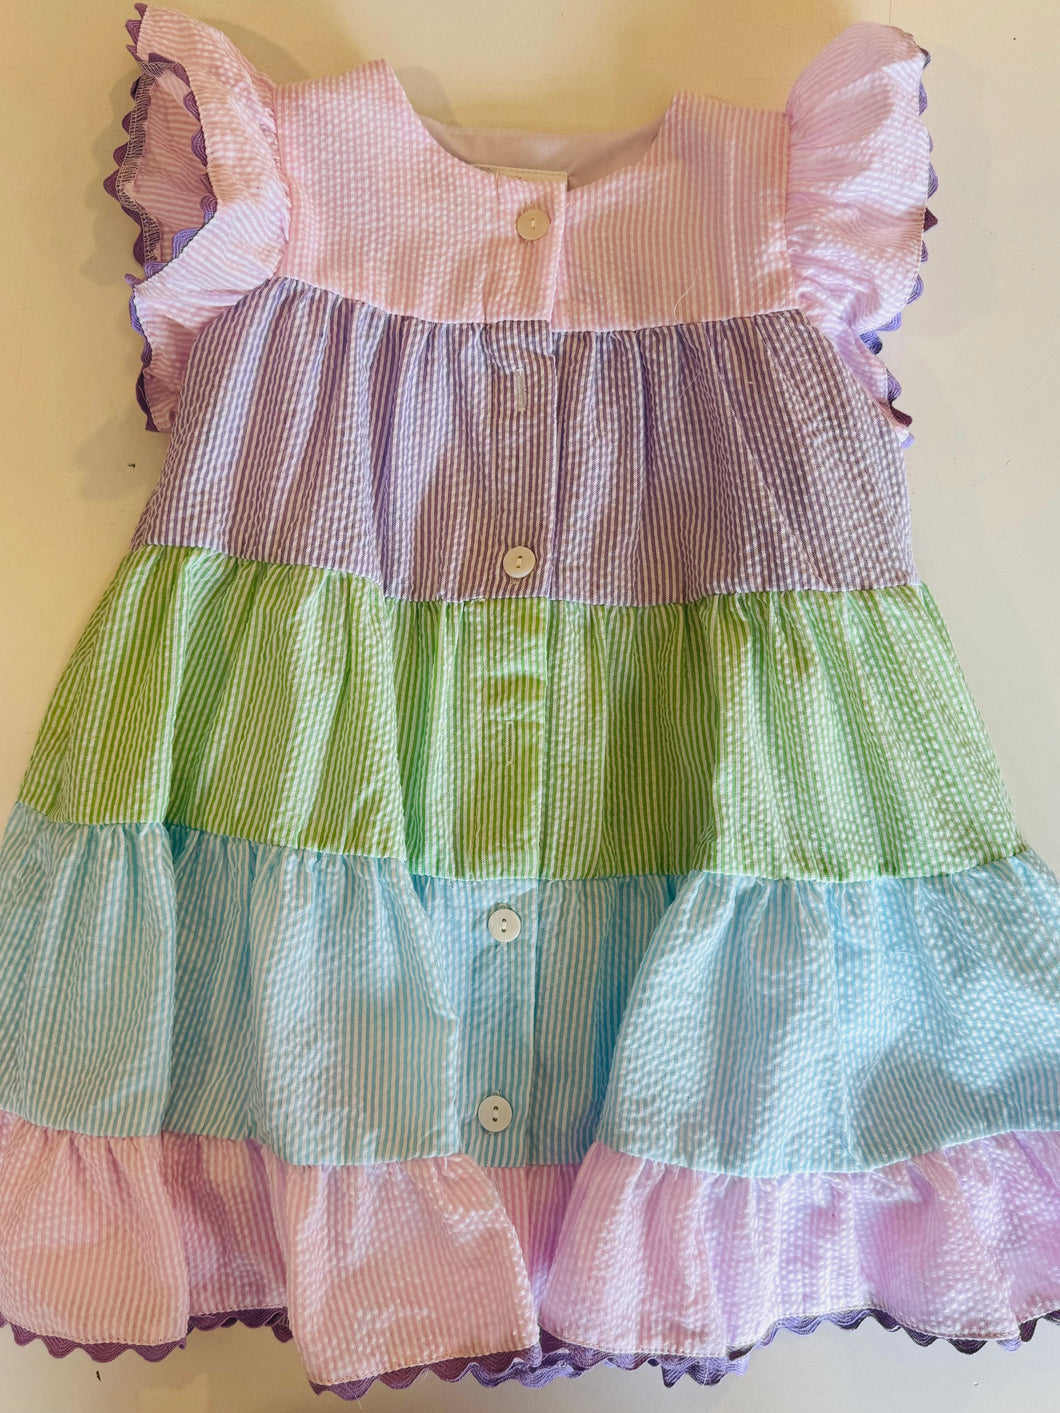 Remy Rainbow Dress